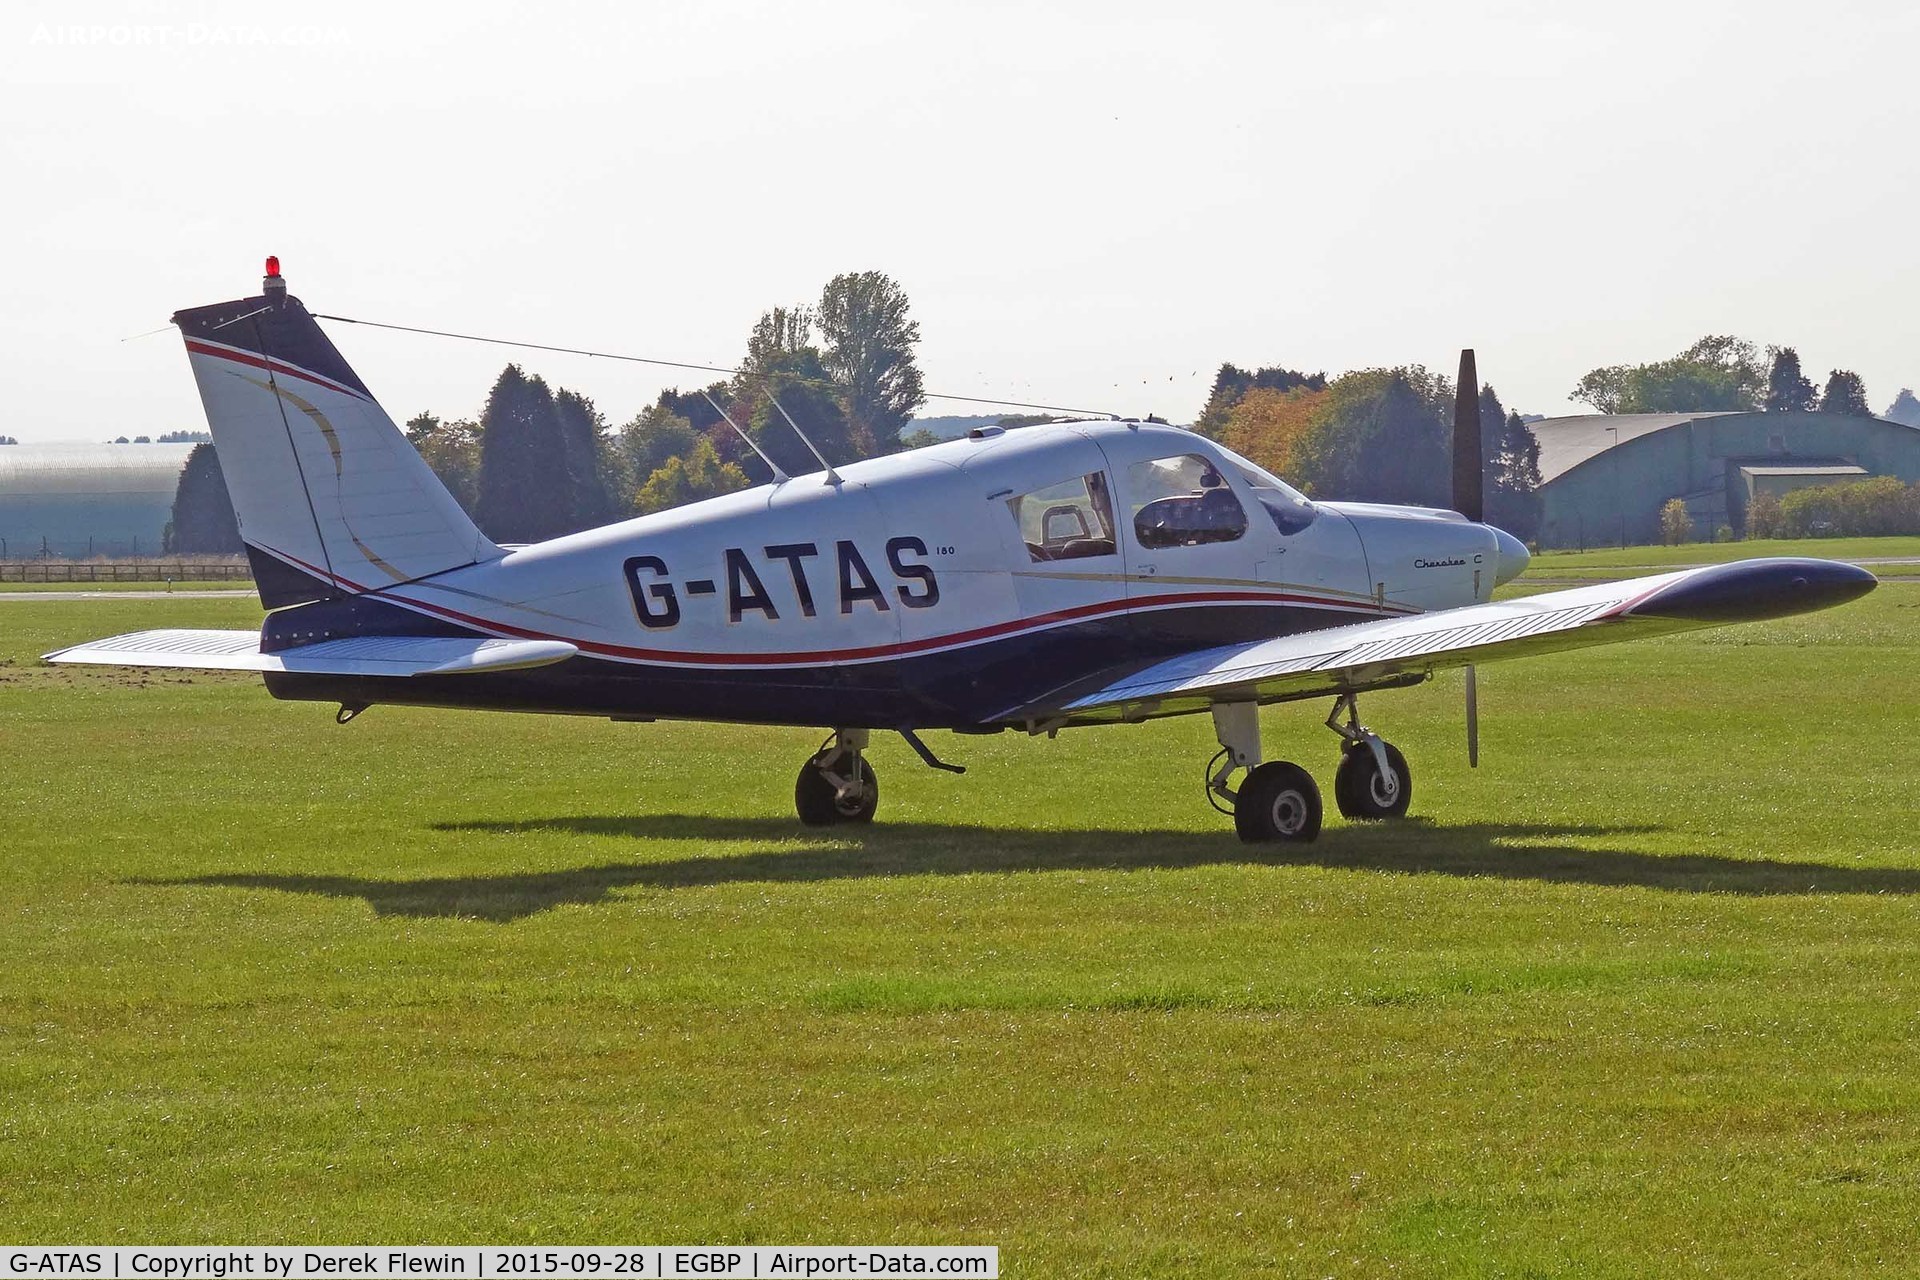 G-ATAS, 1964 Piper PA-28-180 Cherokee C/N 28-2137, Cherokee, Andrewsfield based, seen parked up.